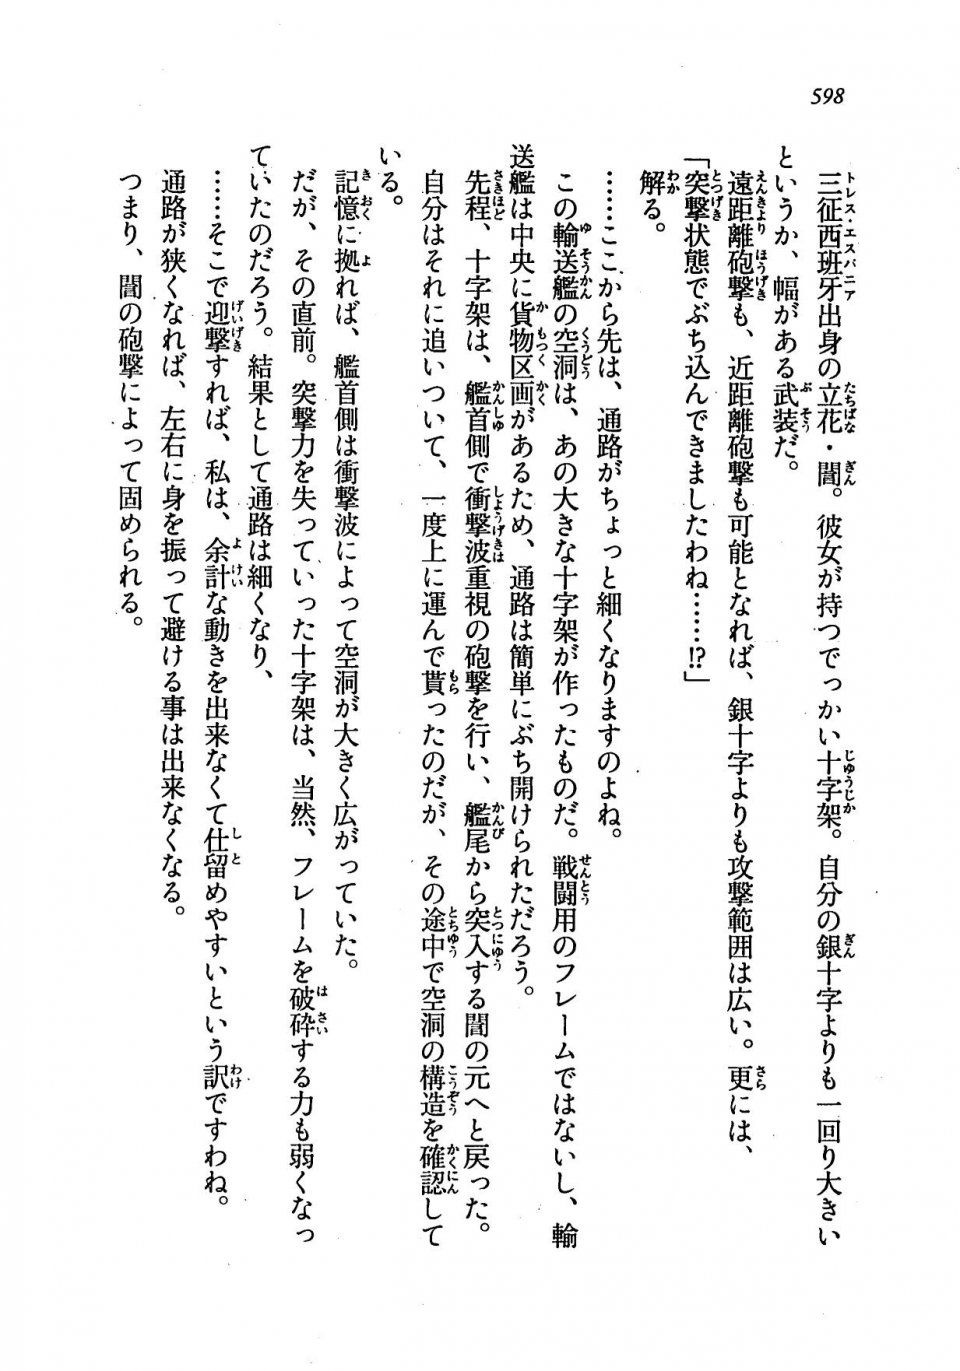 Kyoukai Senjou no Horizon LN Vol 19(8A) - Photo #598